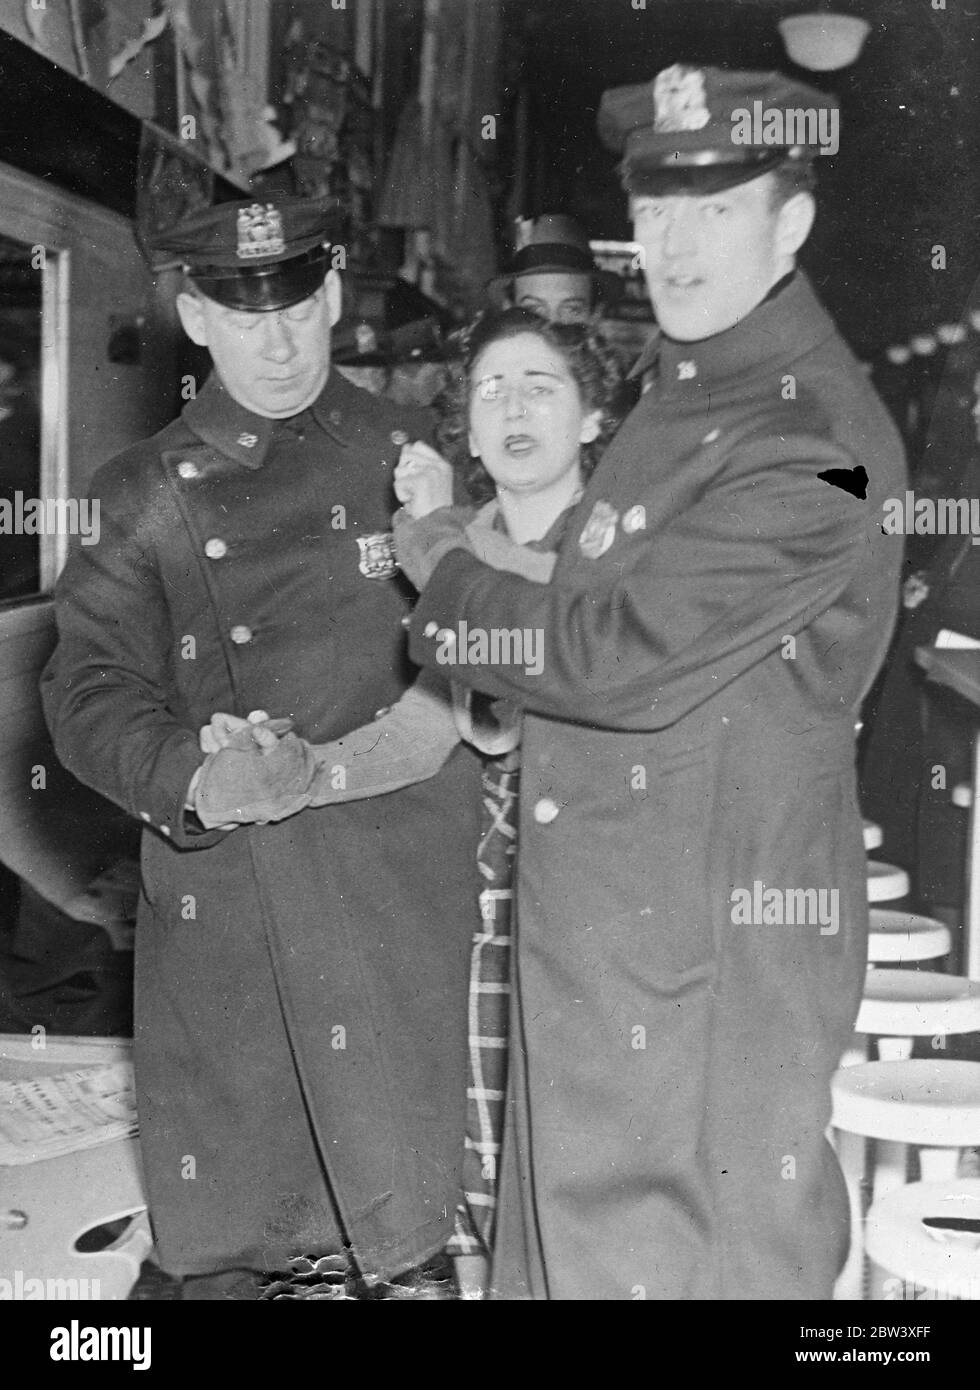 Foto zeigt: Molly Kirsch, eine Assistentin, protestierte mit vollem Protest, als sie von zwei Polizisten aus dem Woolworth-Geschäft in der West 14th Street, New York, begleitet wurde, als die Geschäftsführung die Polizei einrief, Streikende zu vertreiben, die versuchten, das Gelände zu besetzen. Streikende, die sich der Polizei widersetzten, wurden festgenommen. 24. März 1937 Stockfoto